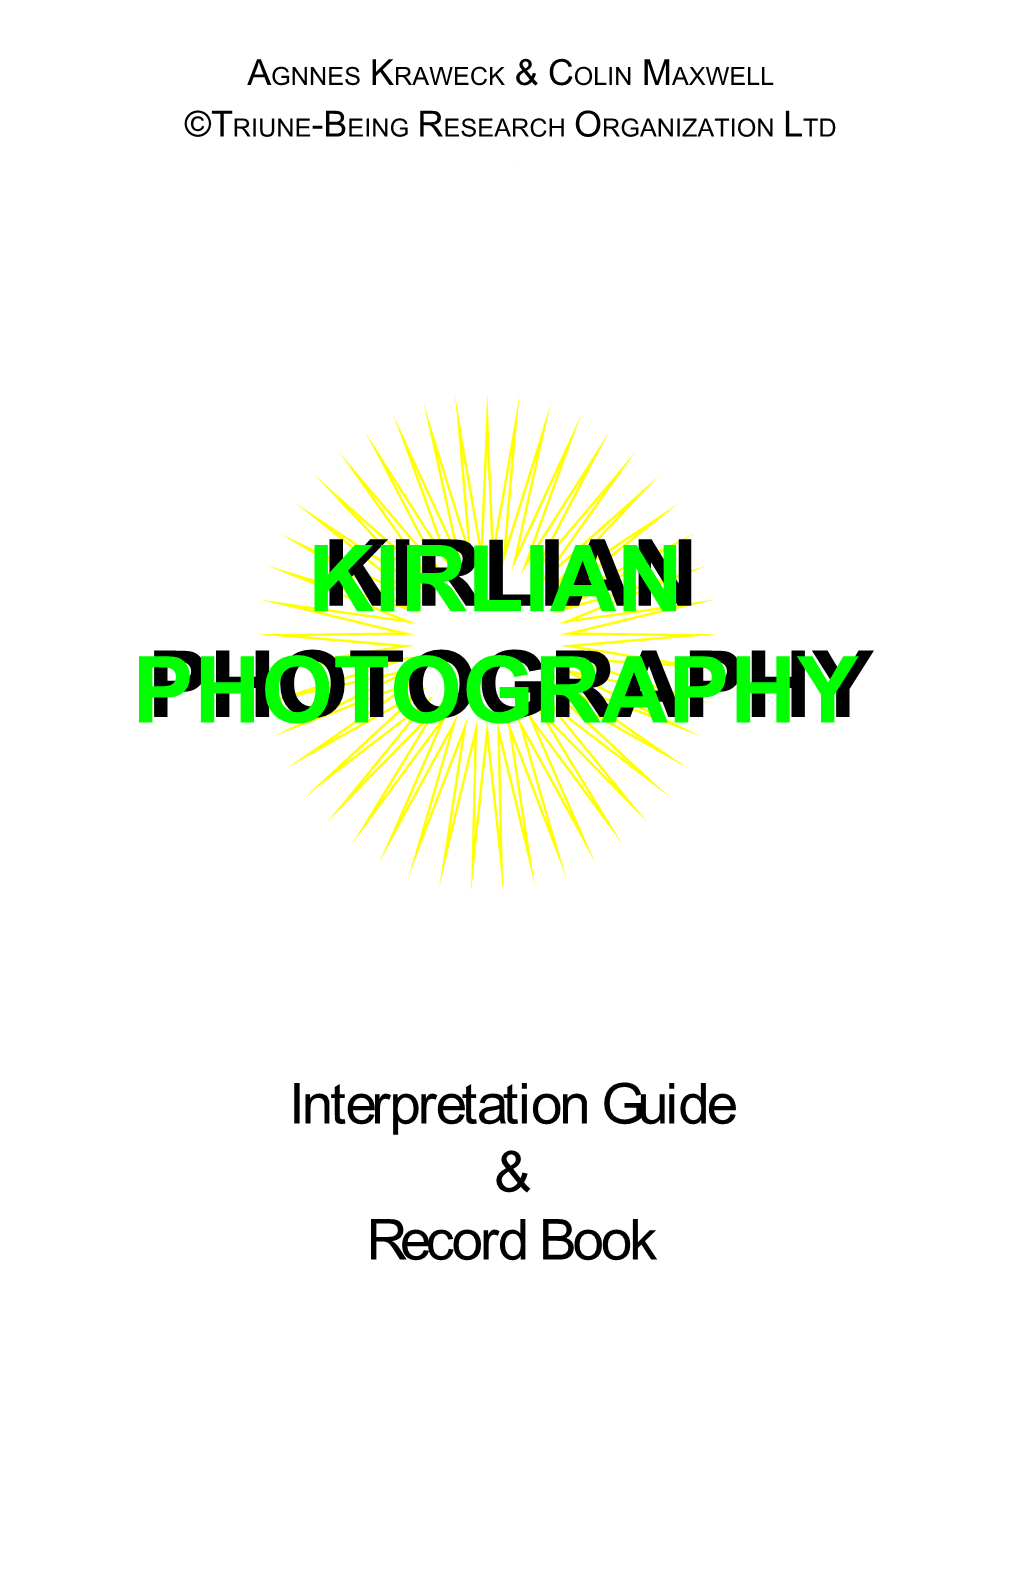 Kirlian Photographyphotography